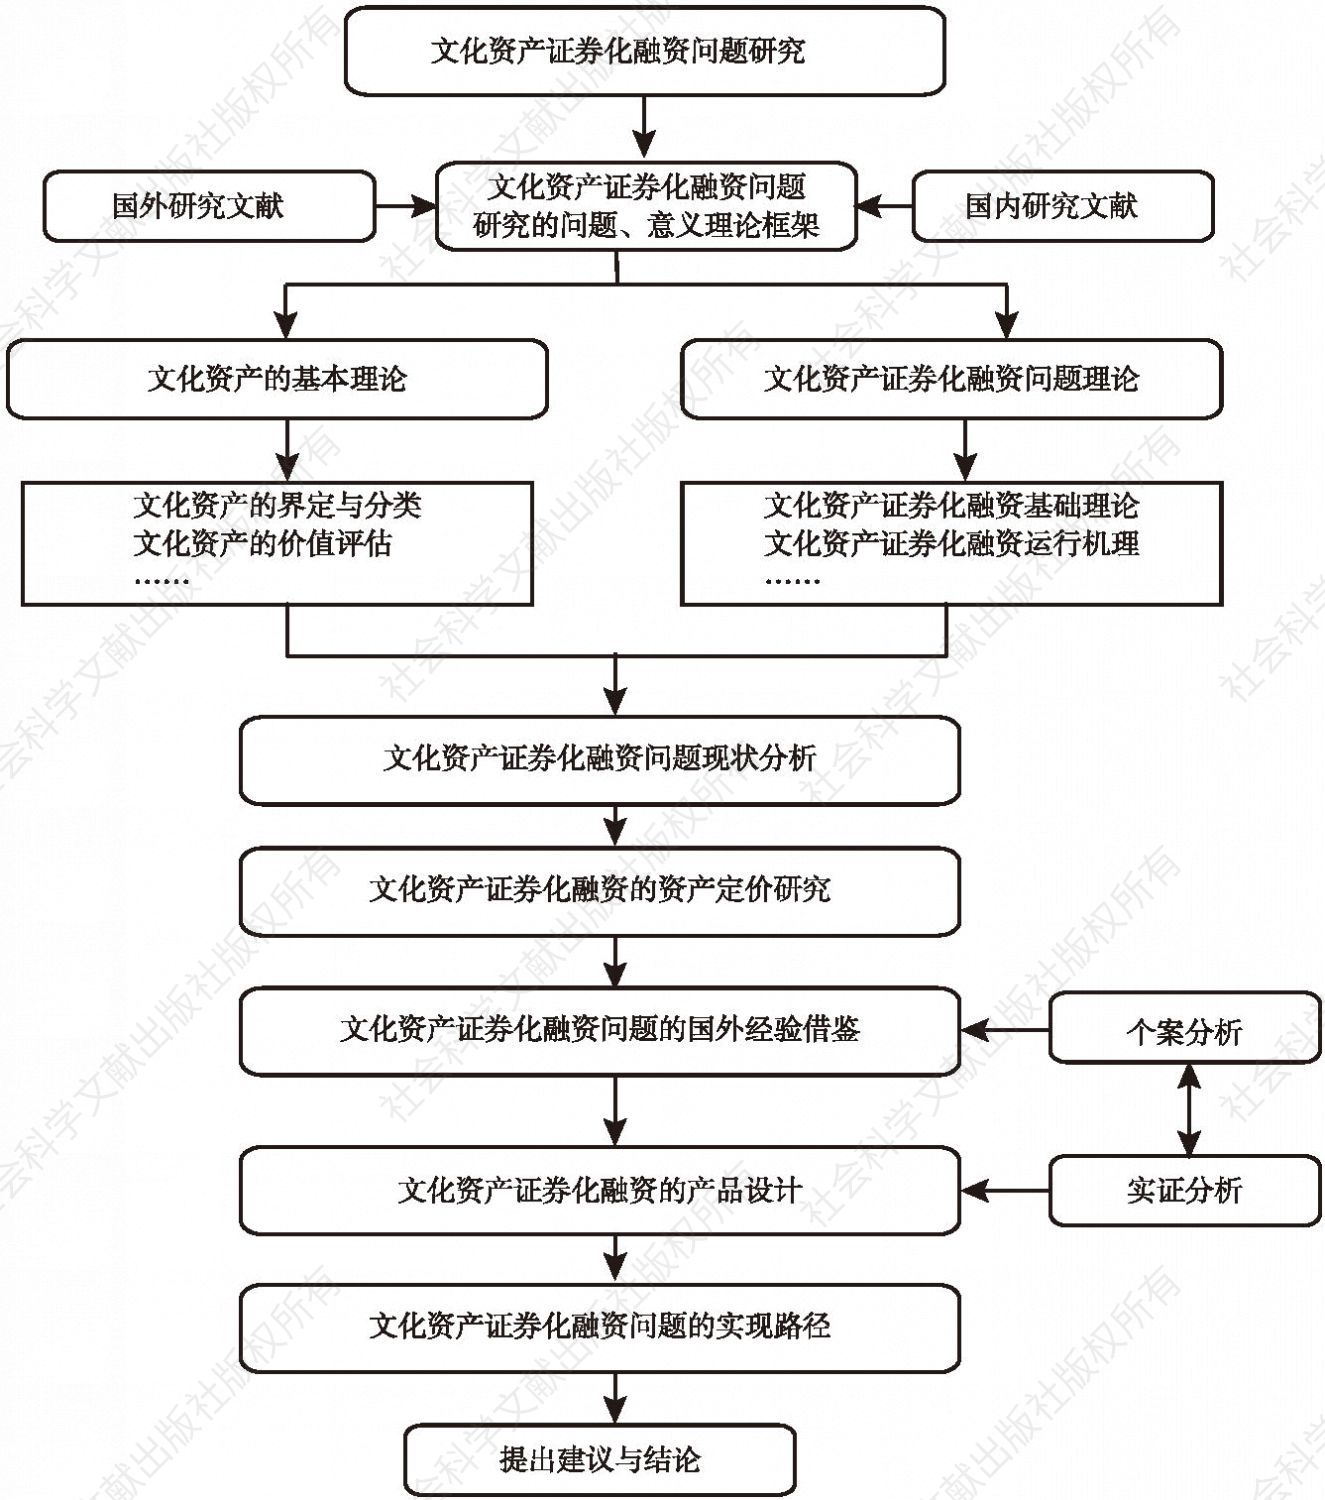 图1-3 研究技术路线